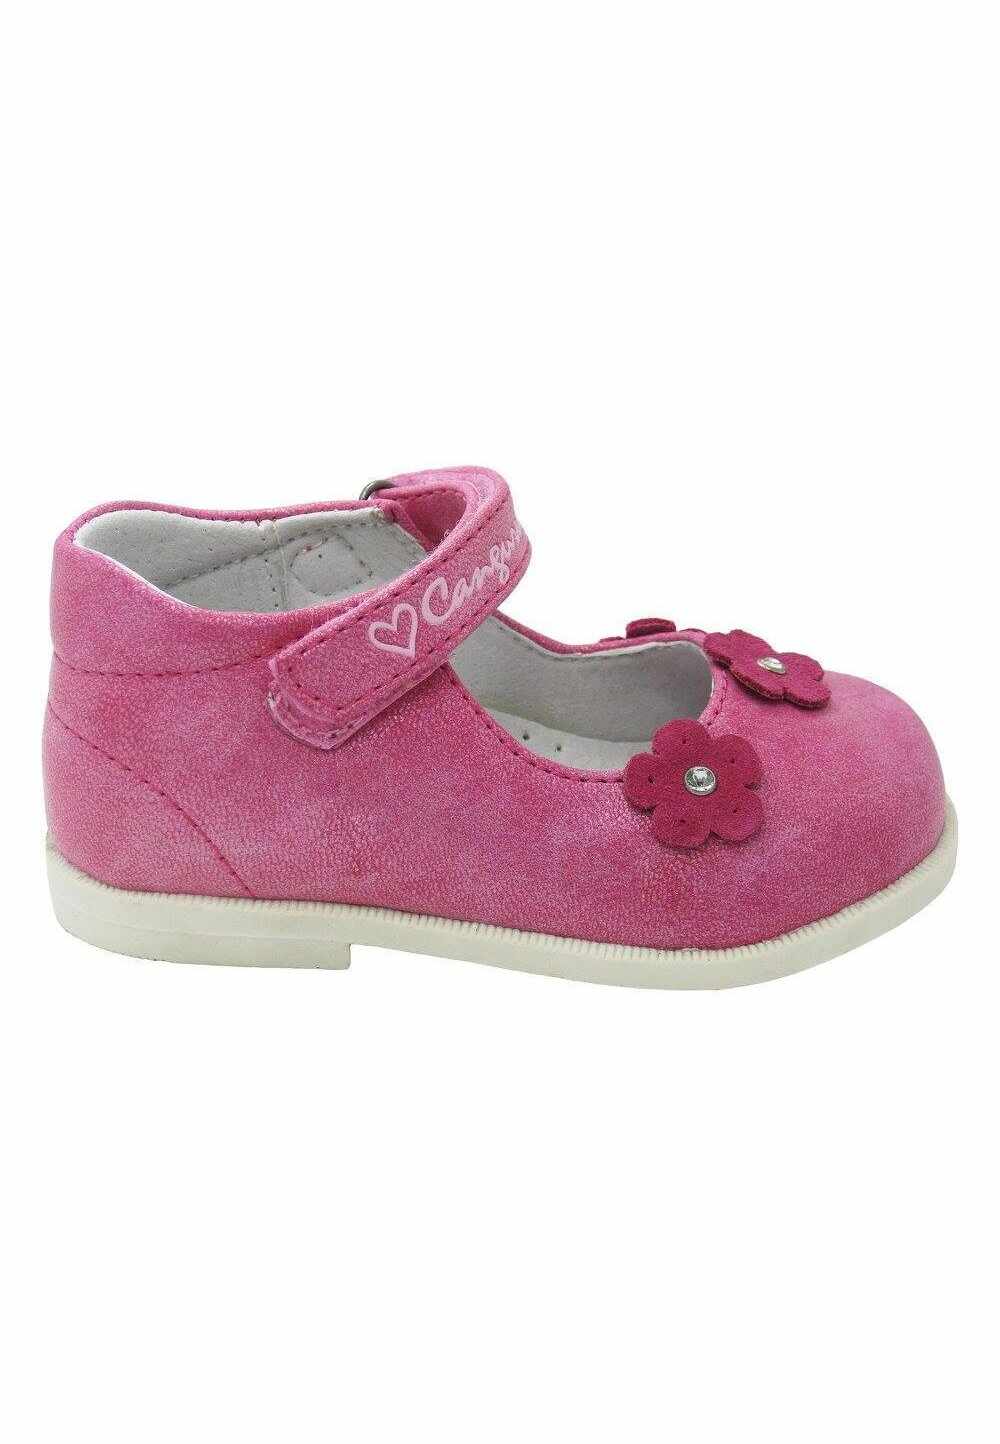 Pantofi fete, roz cu floricele